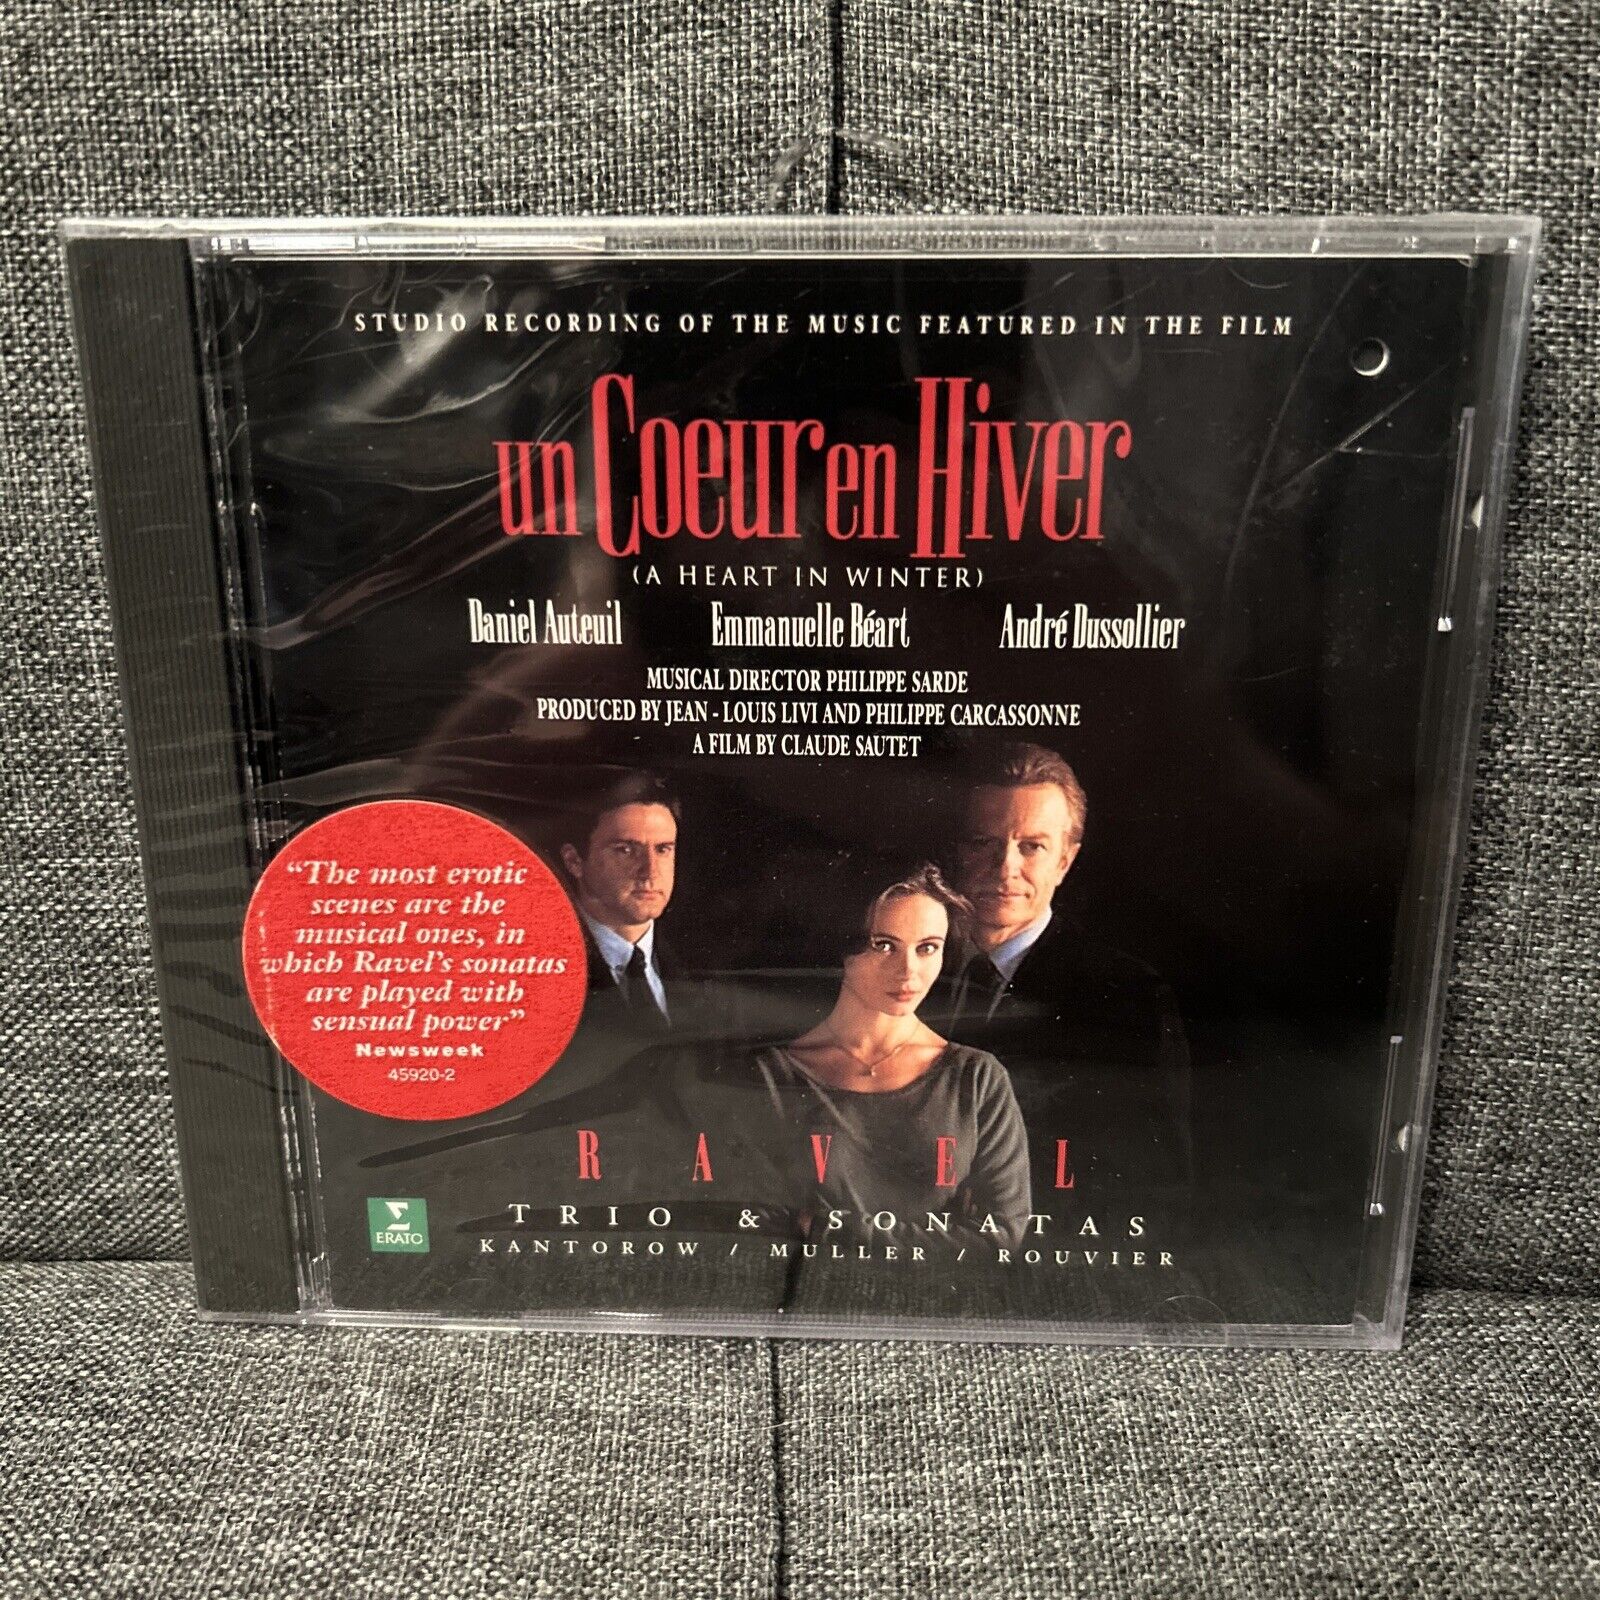 RARE! NEW UN COEUR EN HIVER 1993 CD Soundtrack Jean-Jacques Kantorow Erato Ravel